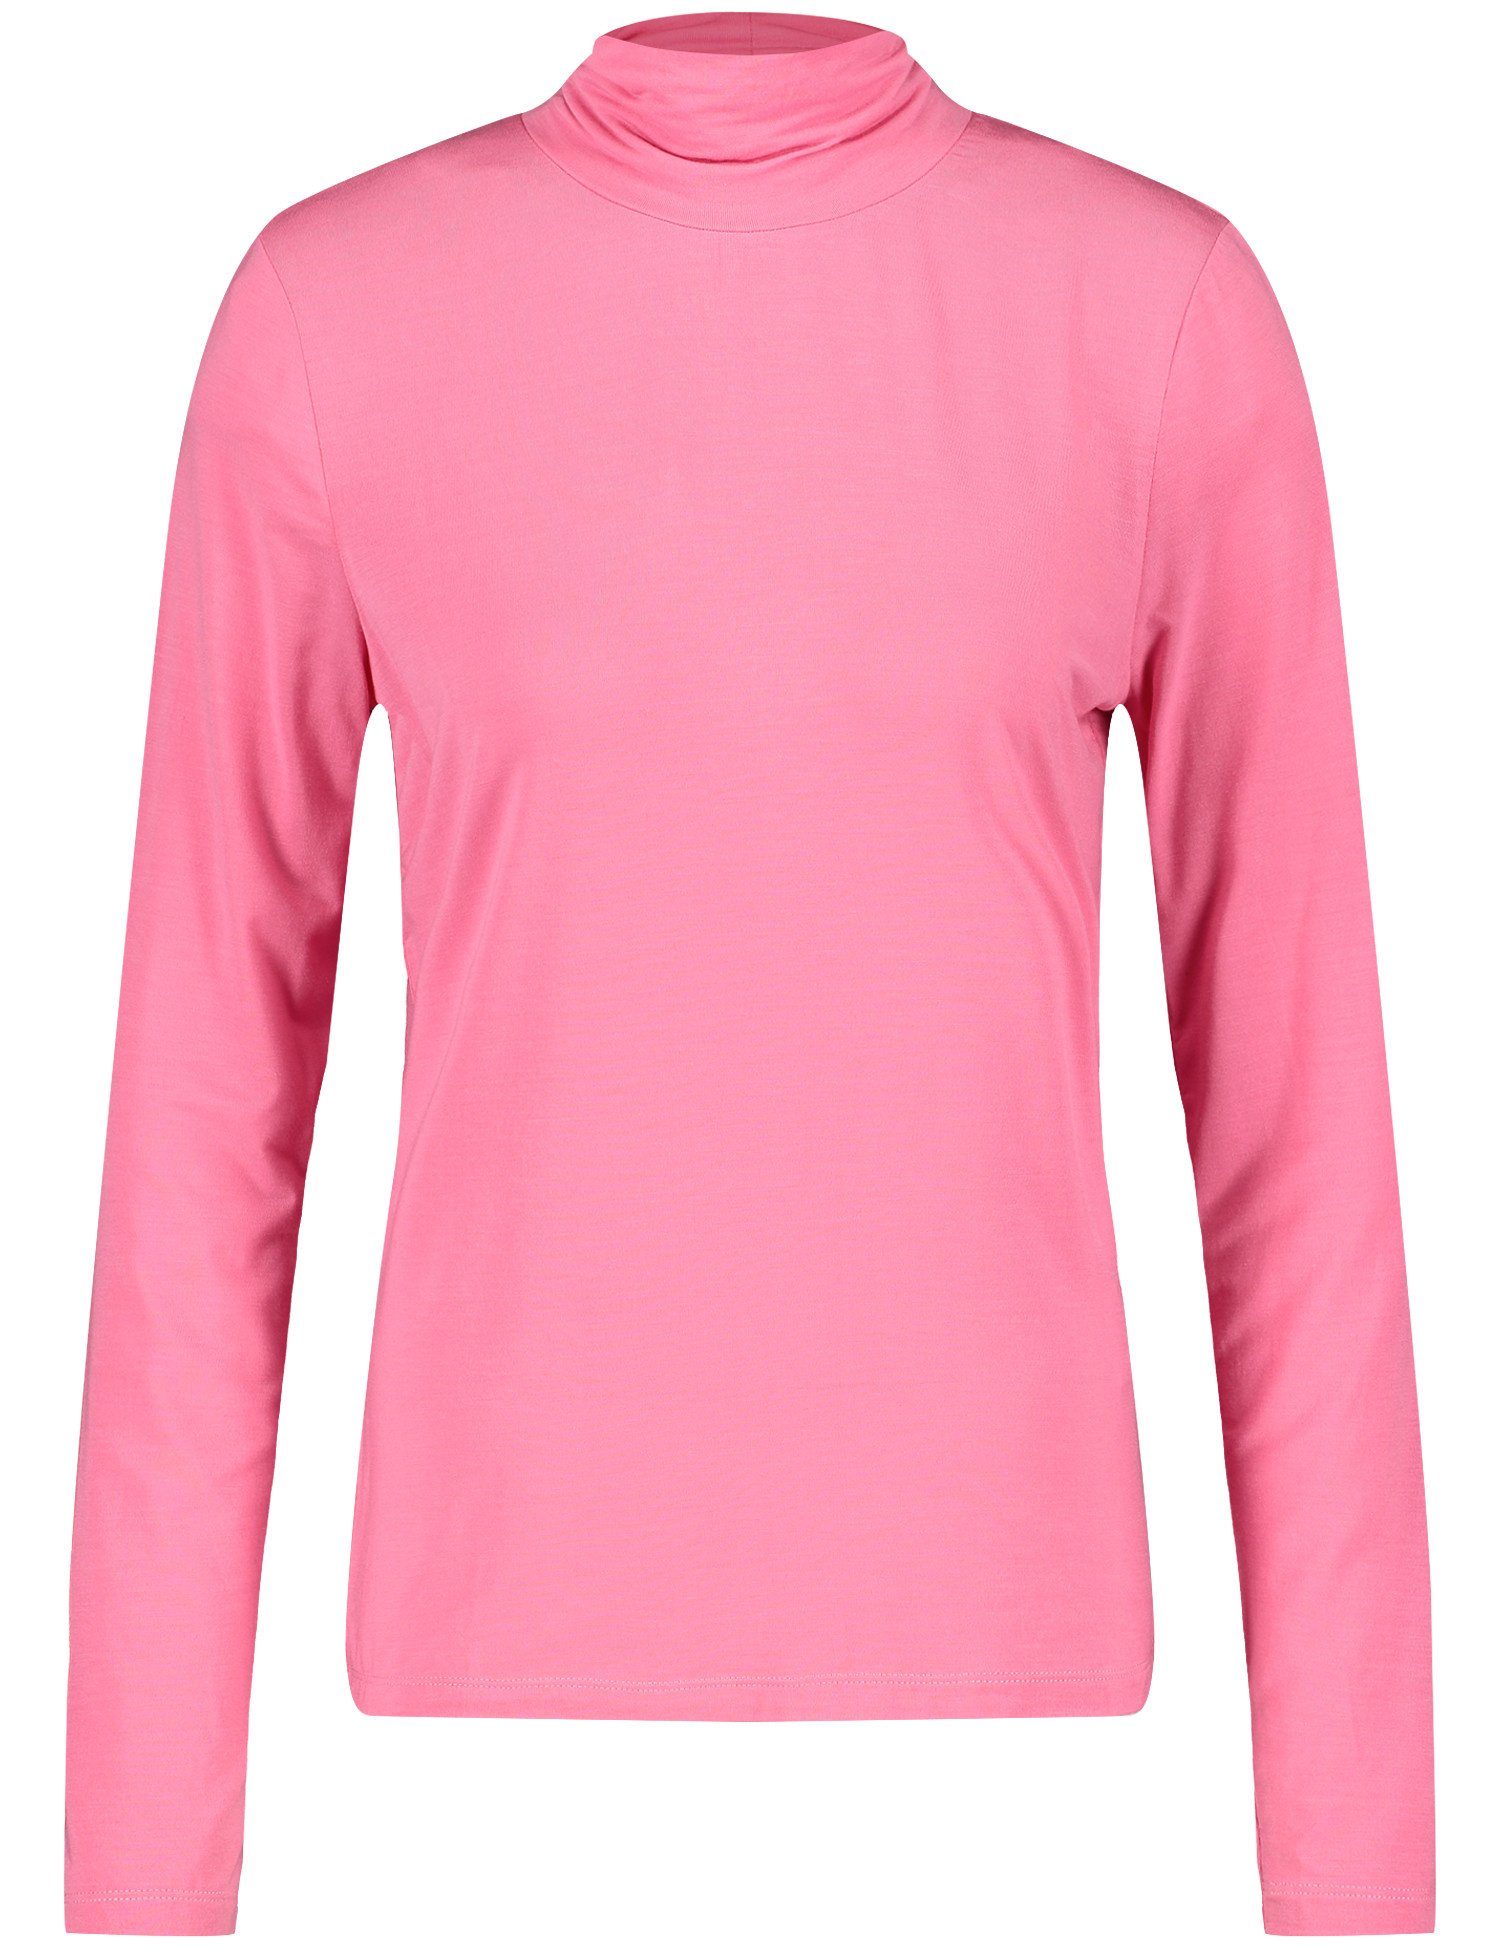 GERRY WEBER Longsleeve Langarmshirt Mit Faltenturtle rose pink | Sweatshirts